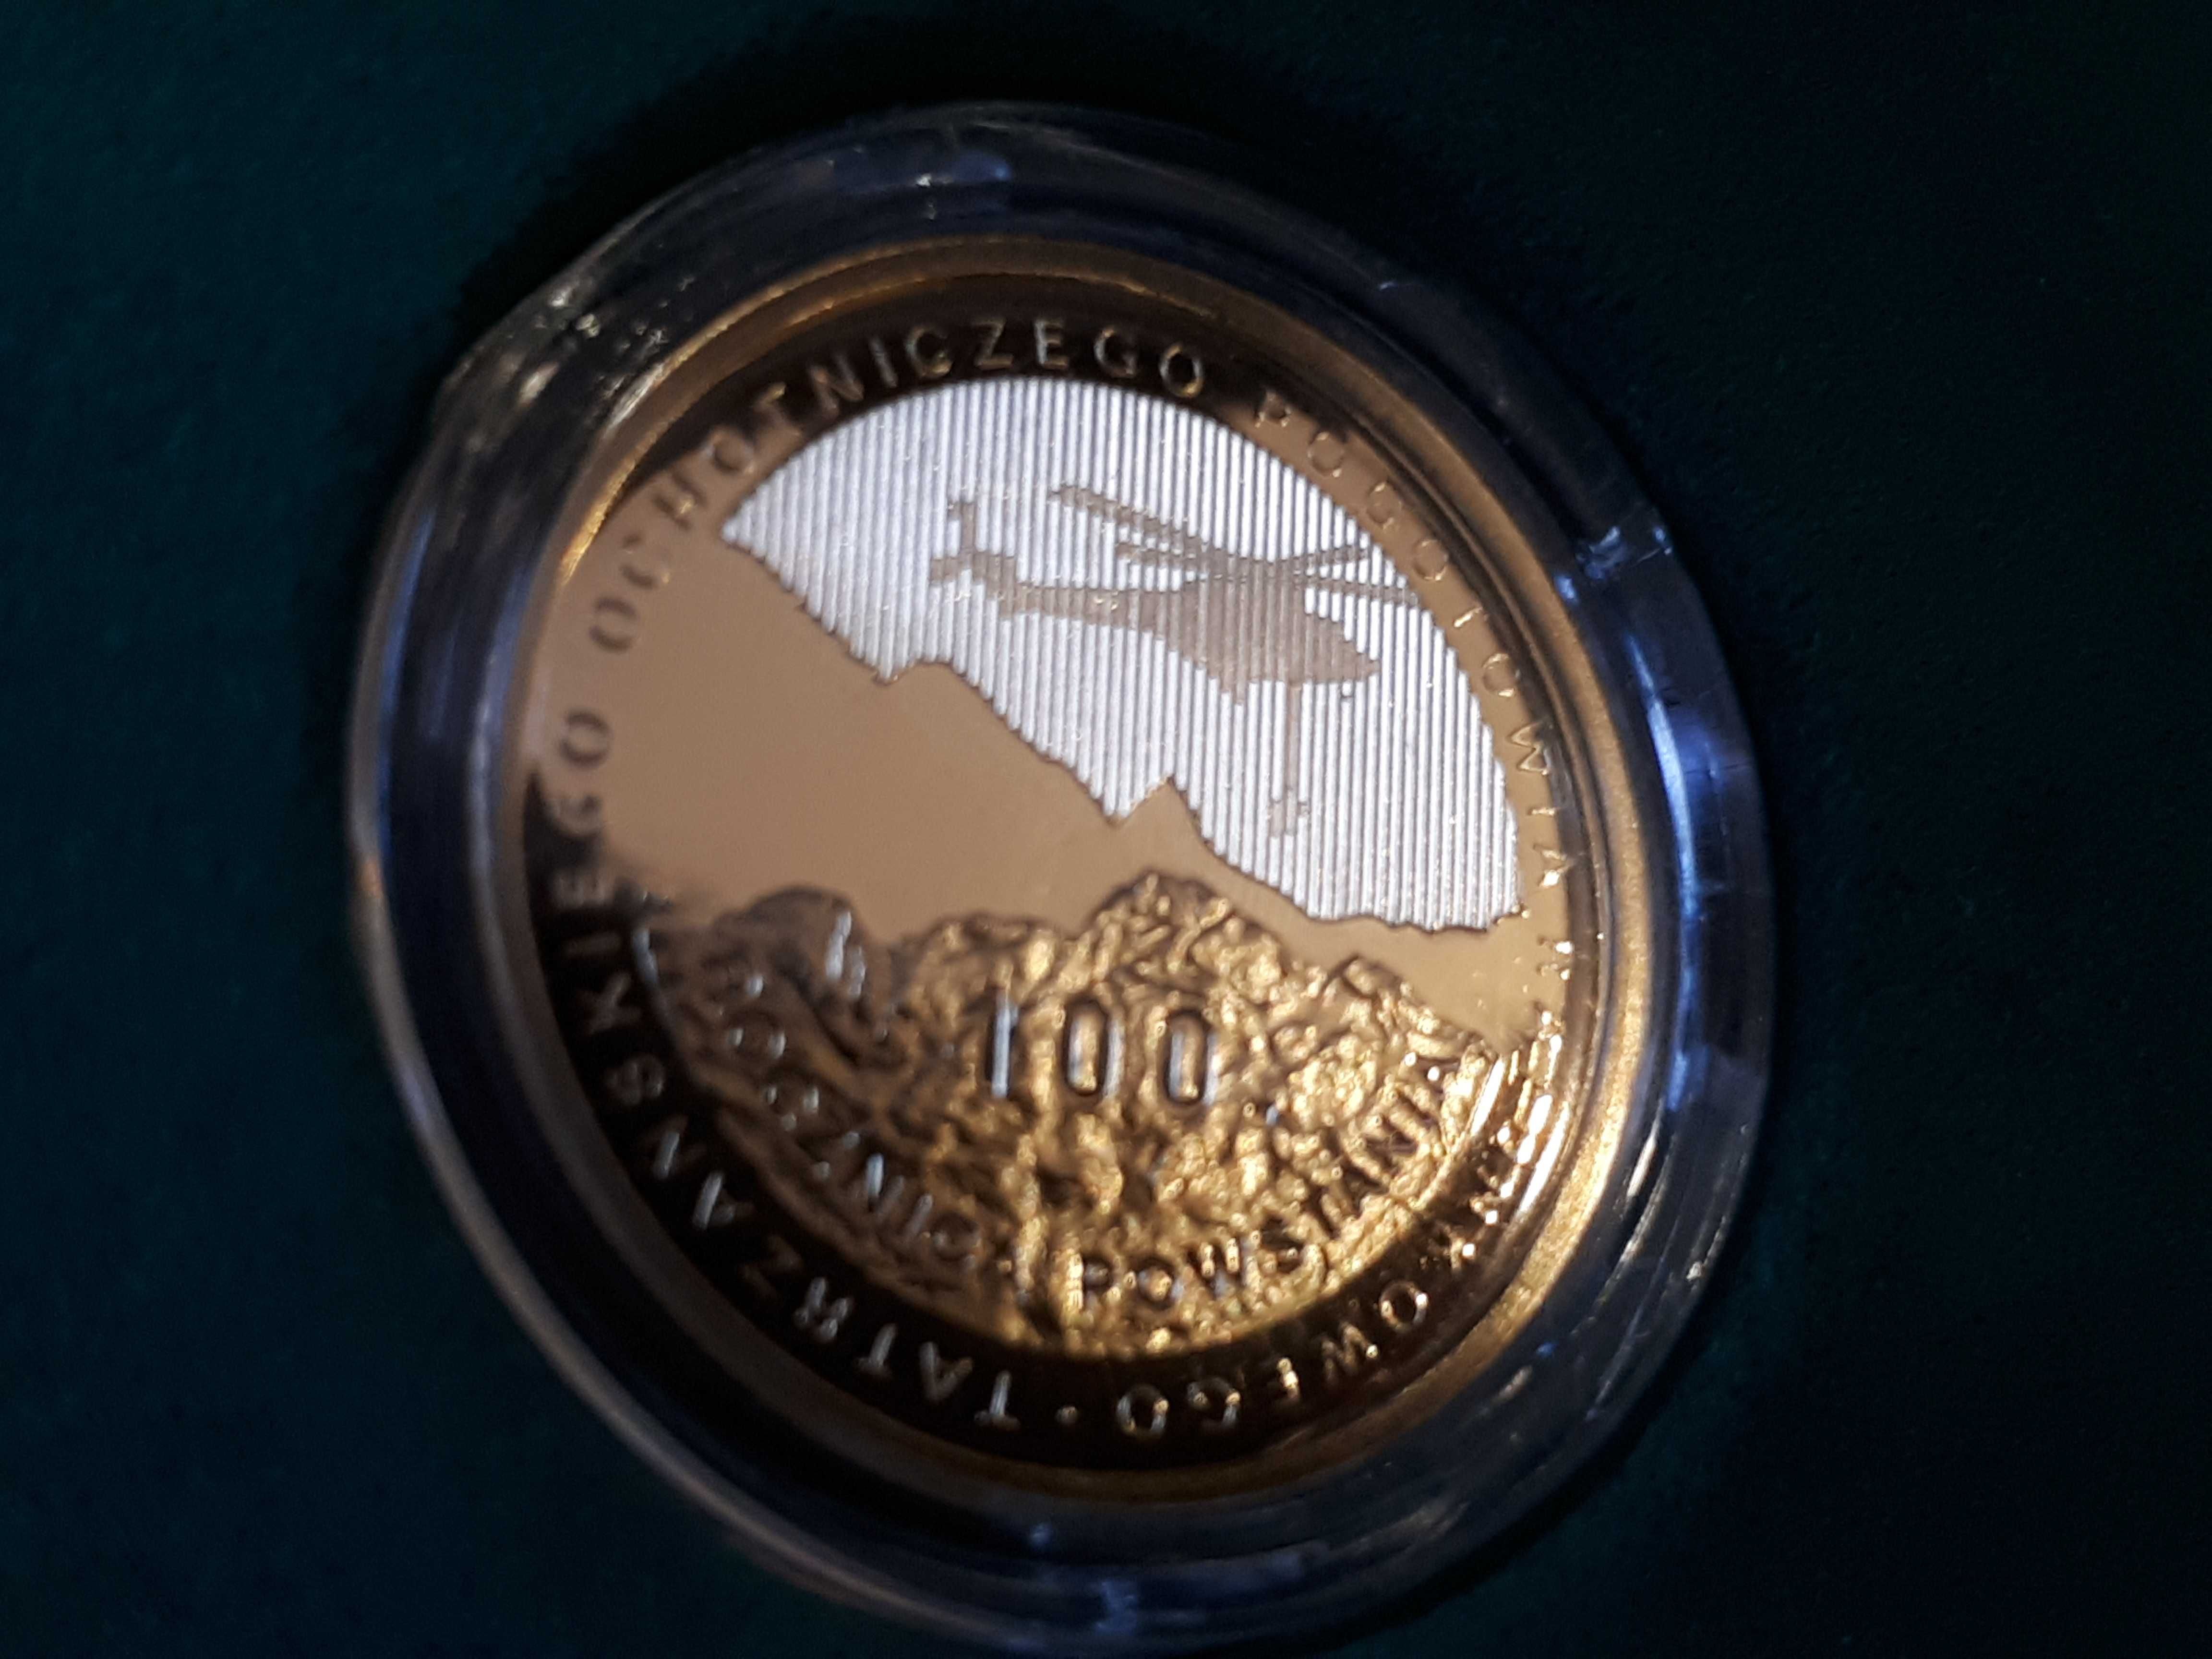 Złota moneta -100zł 2009r, 100 rocznica TOPR